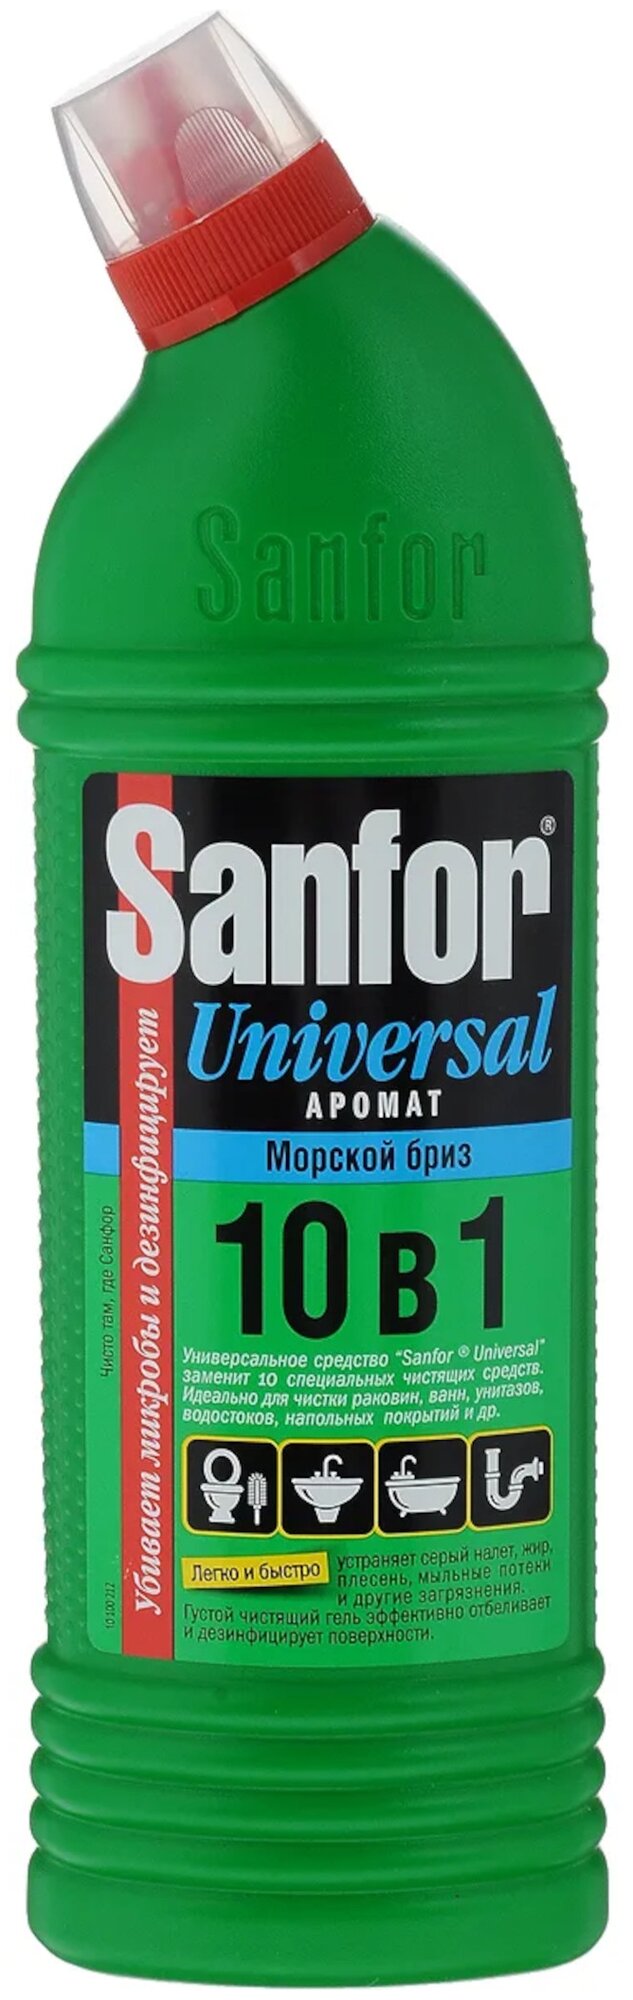 Sanfor гель Universal 10 в 1 Морской бриз